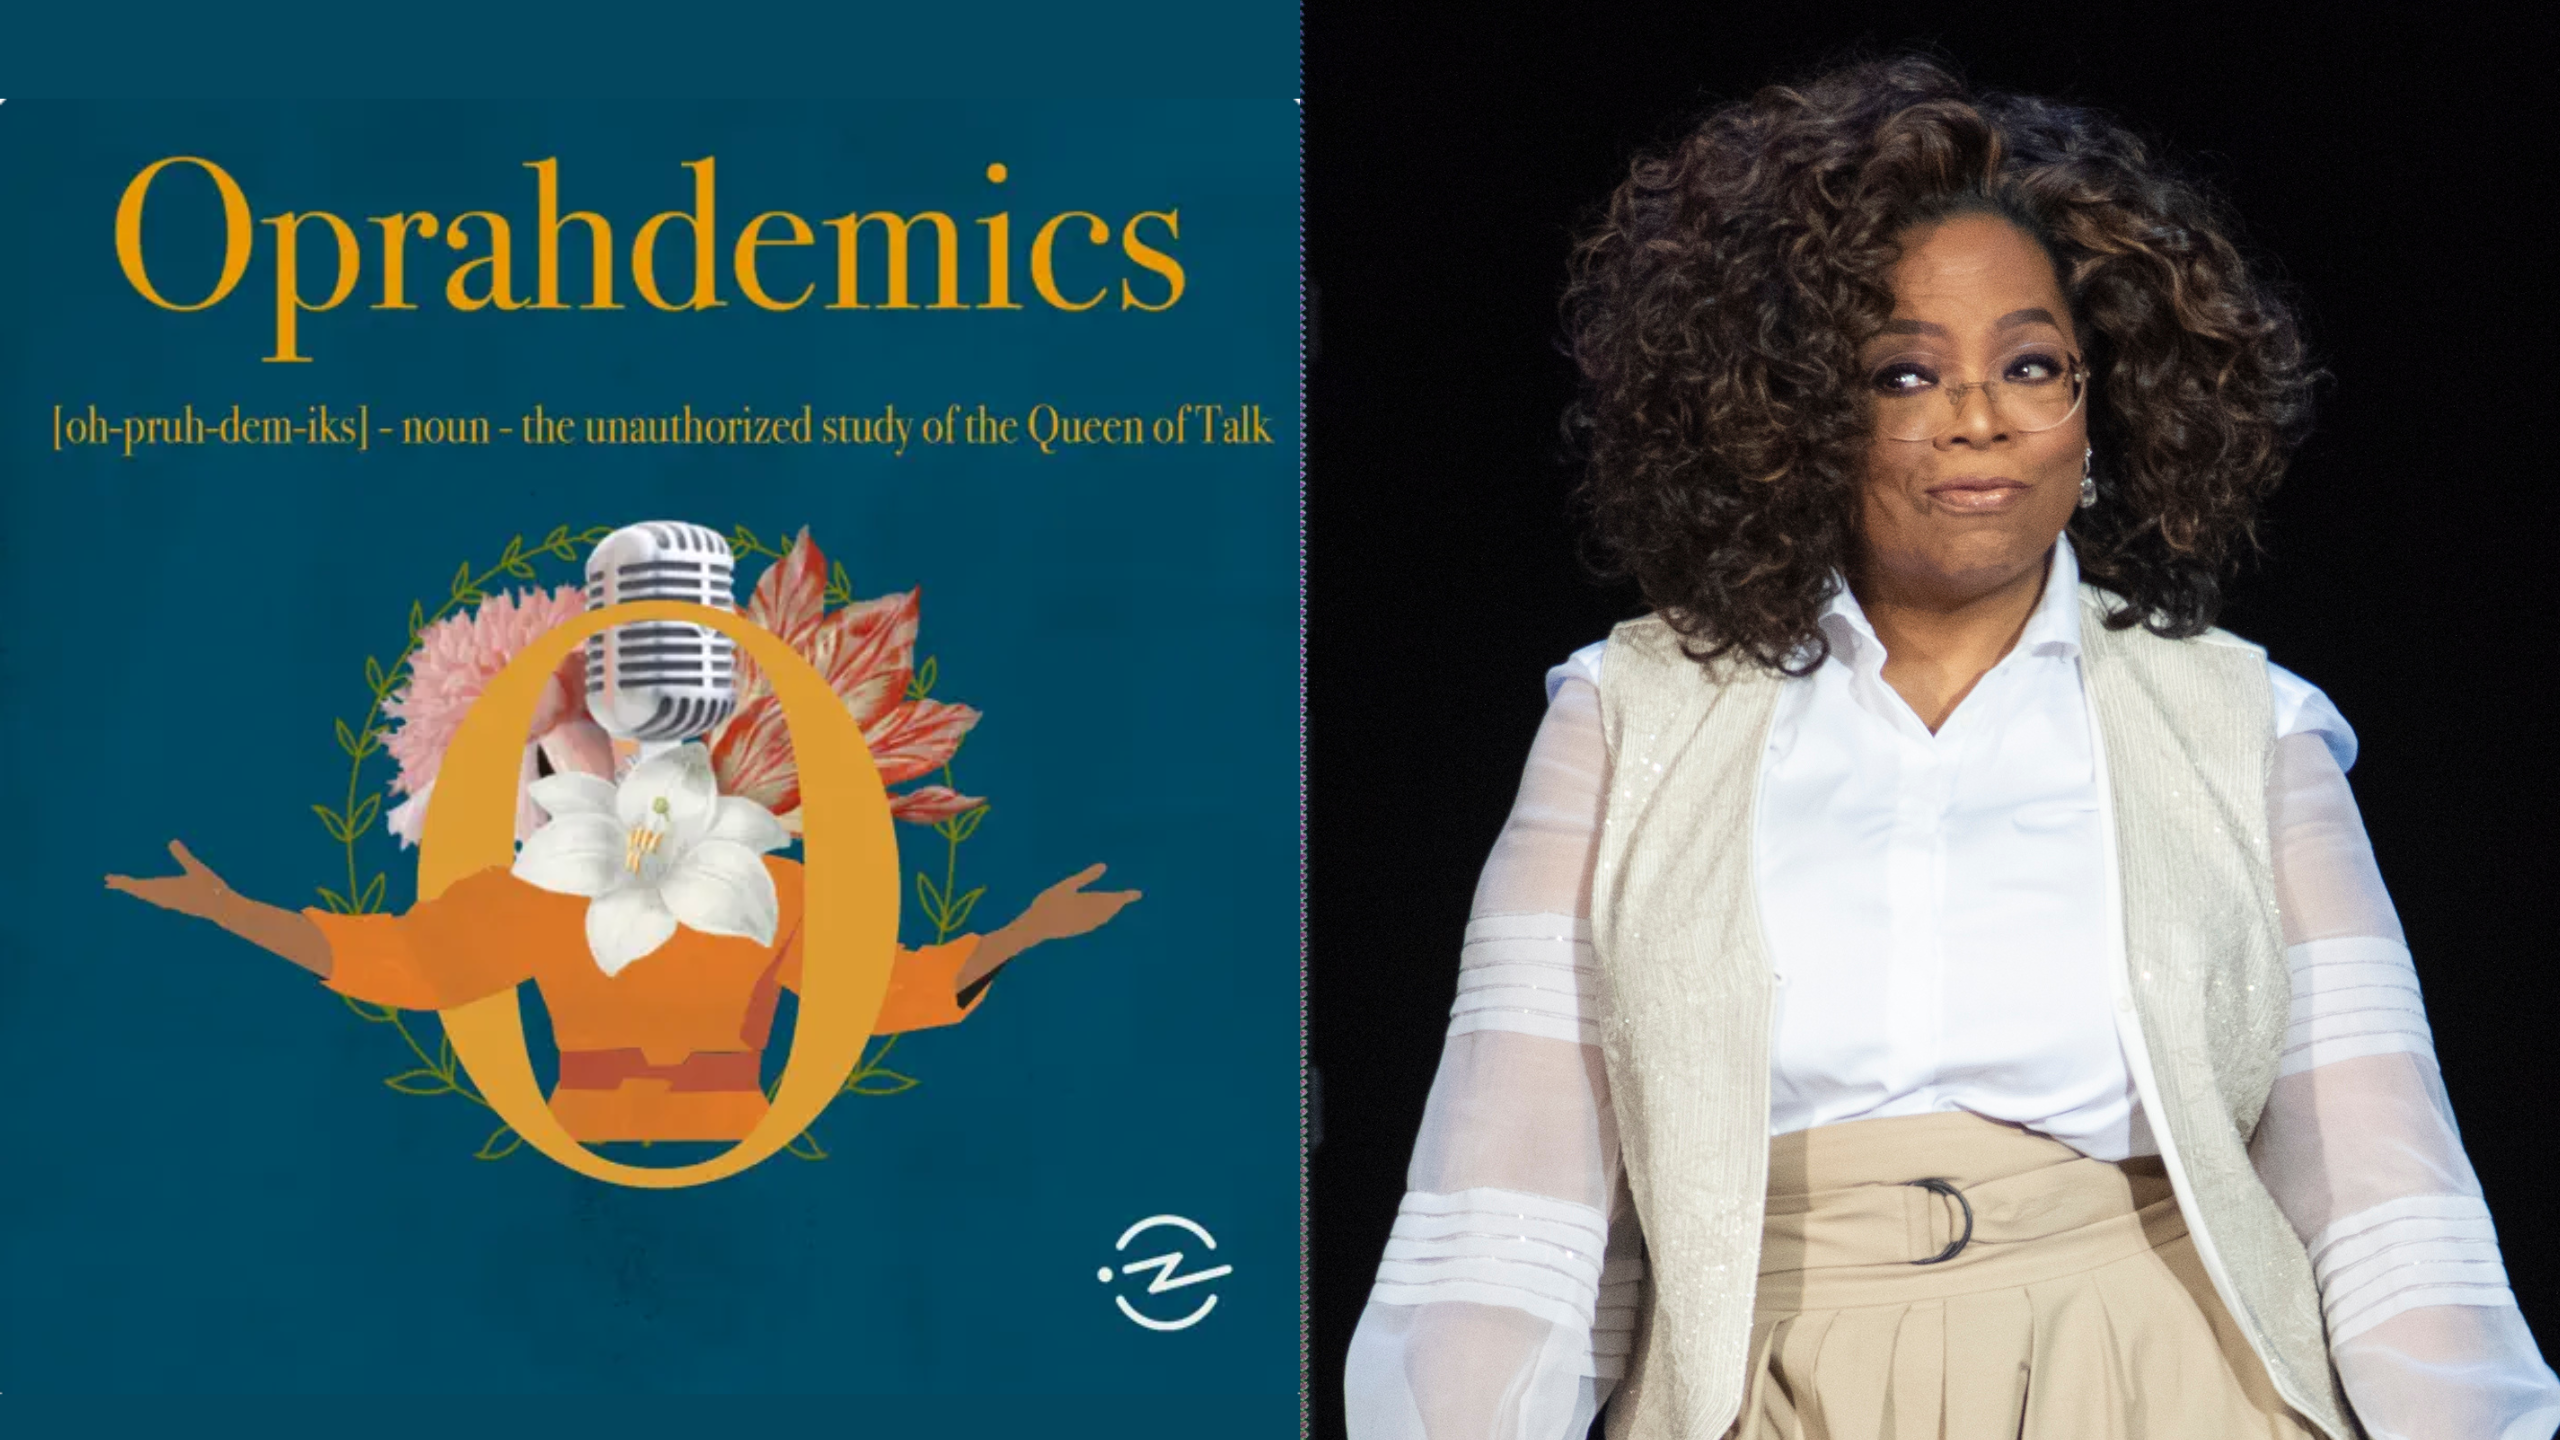 Oprah inicia una demanda contra el podcast ‘no autorizado’ Oprahdemics